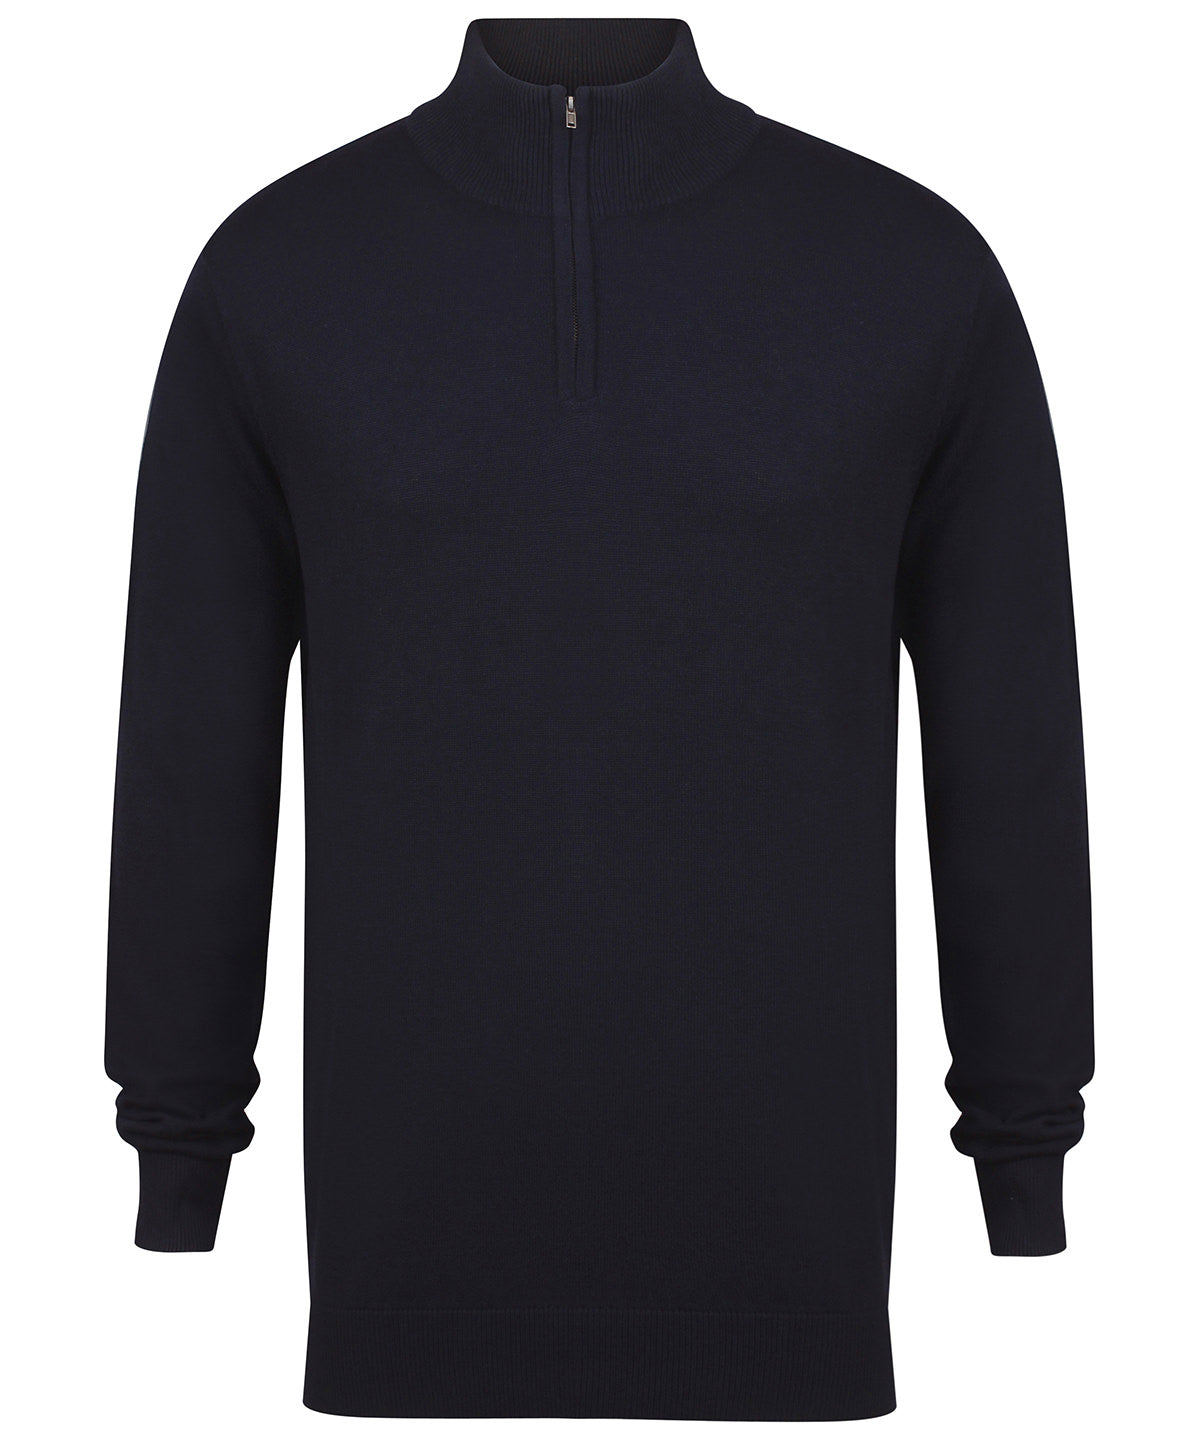 Personalised Knitted Jumpers - Black Henbury ¼ zip jumper